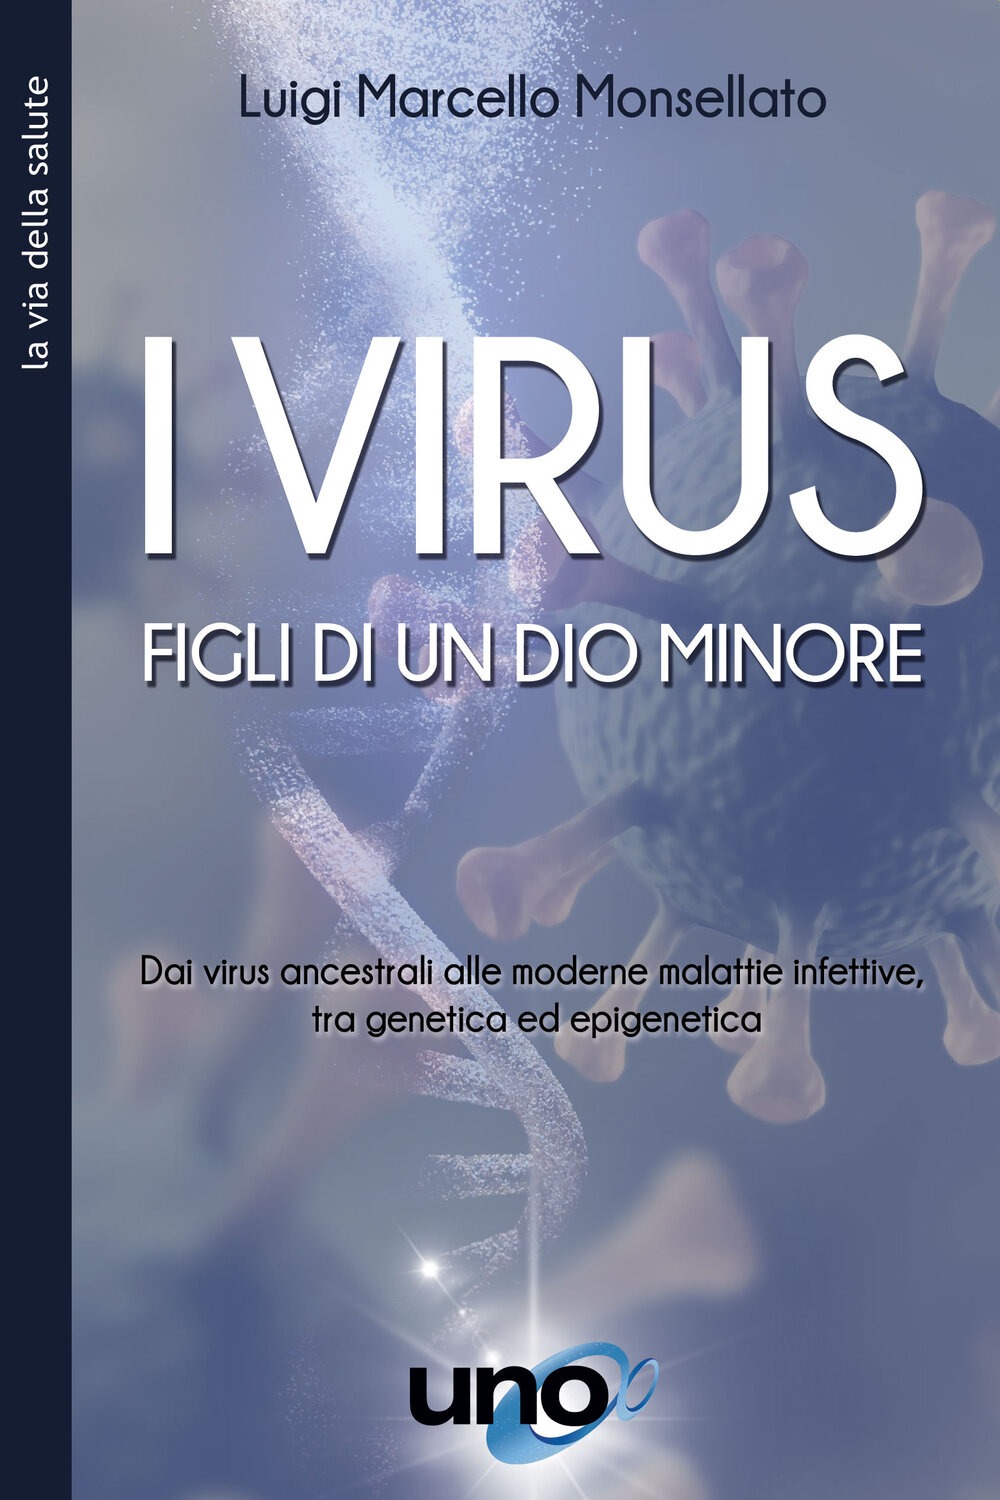 I virus